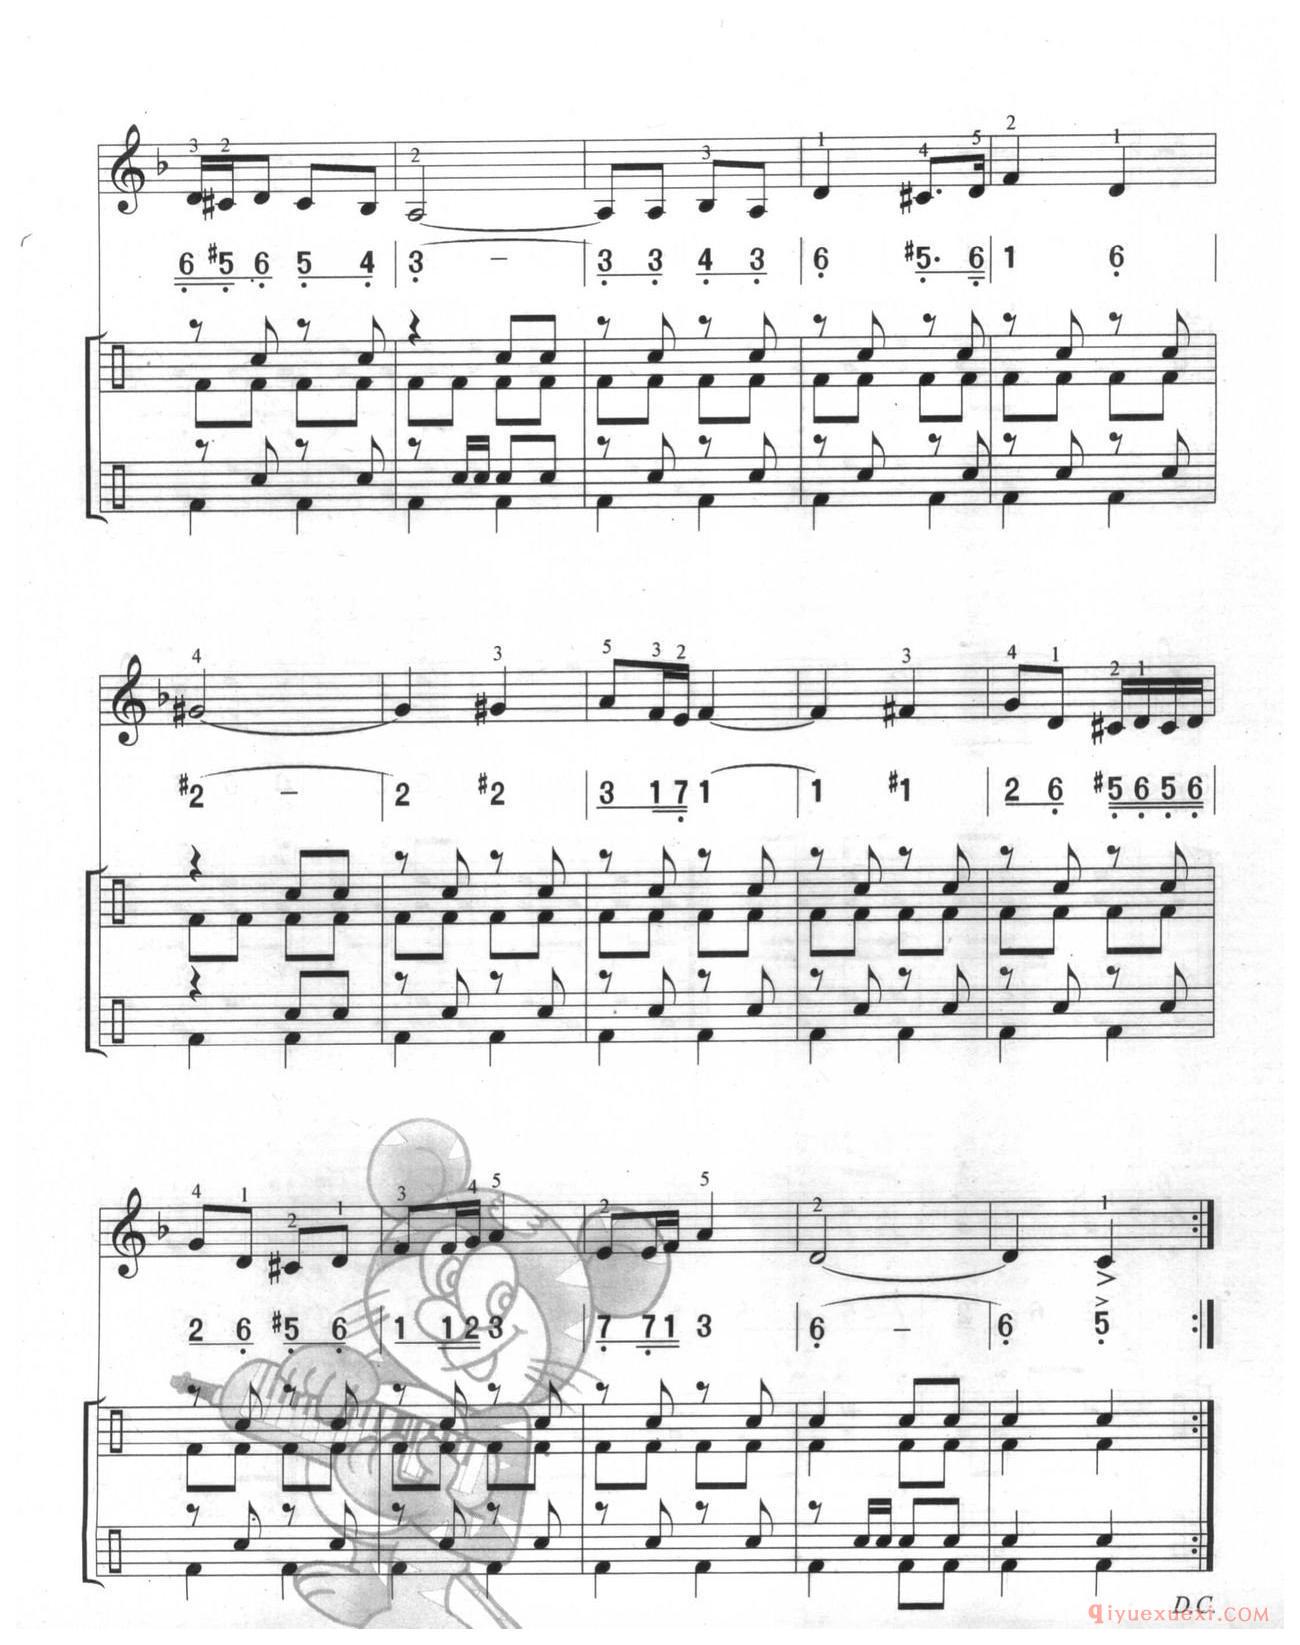 口风琴多声部乐曲《波基上校进行曲(总谱)与钢琴的练习》加入打击乐的练习